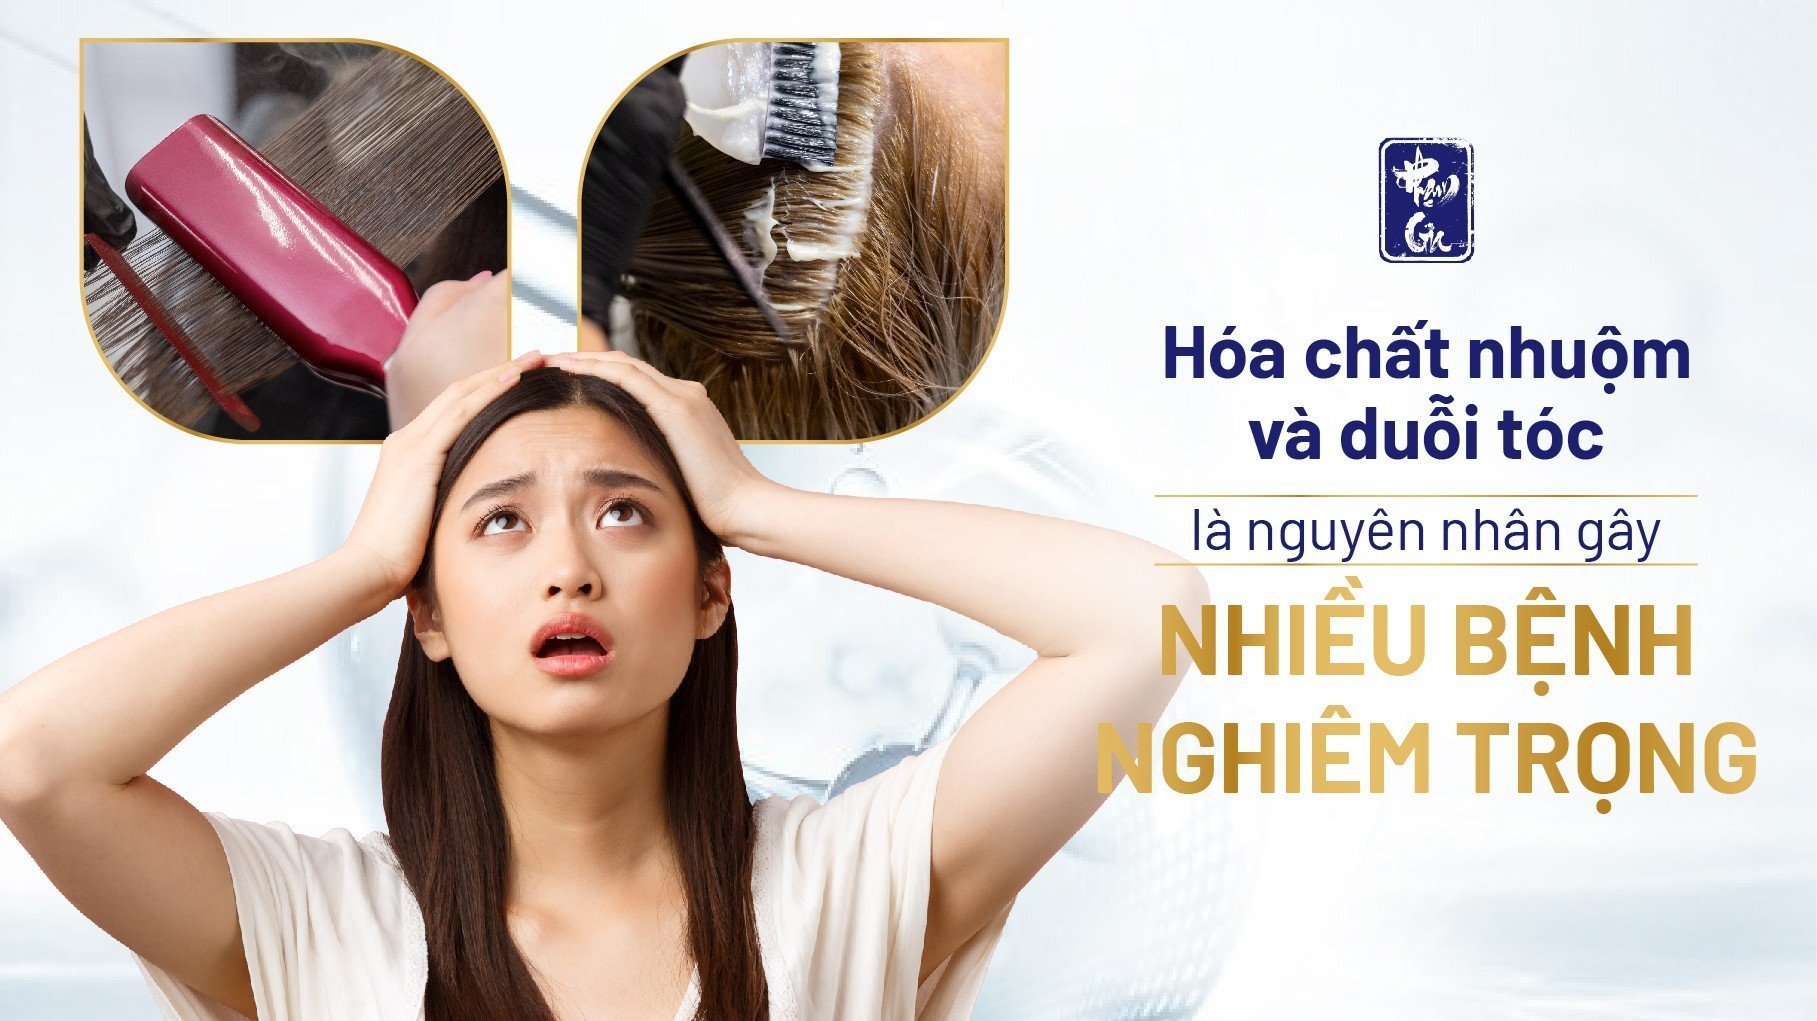 Hóa chất nhuộm và duỗi tóc là nguyên nhân gây nhiều bệnh nghiêm trọng